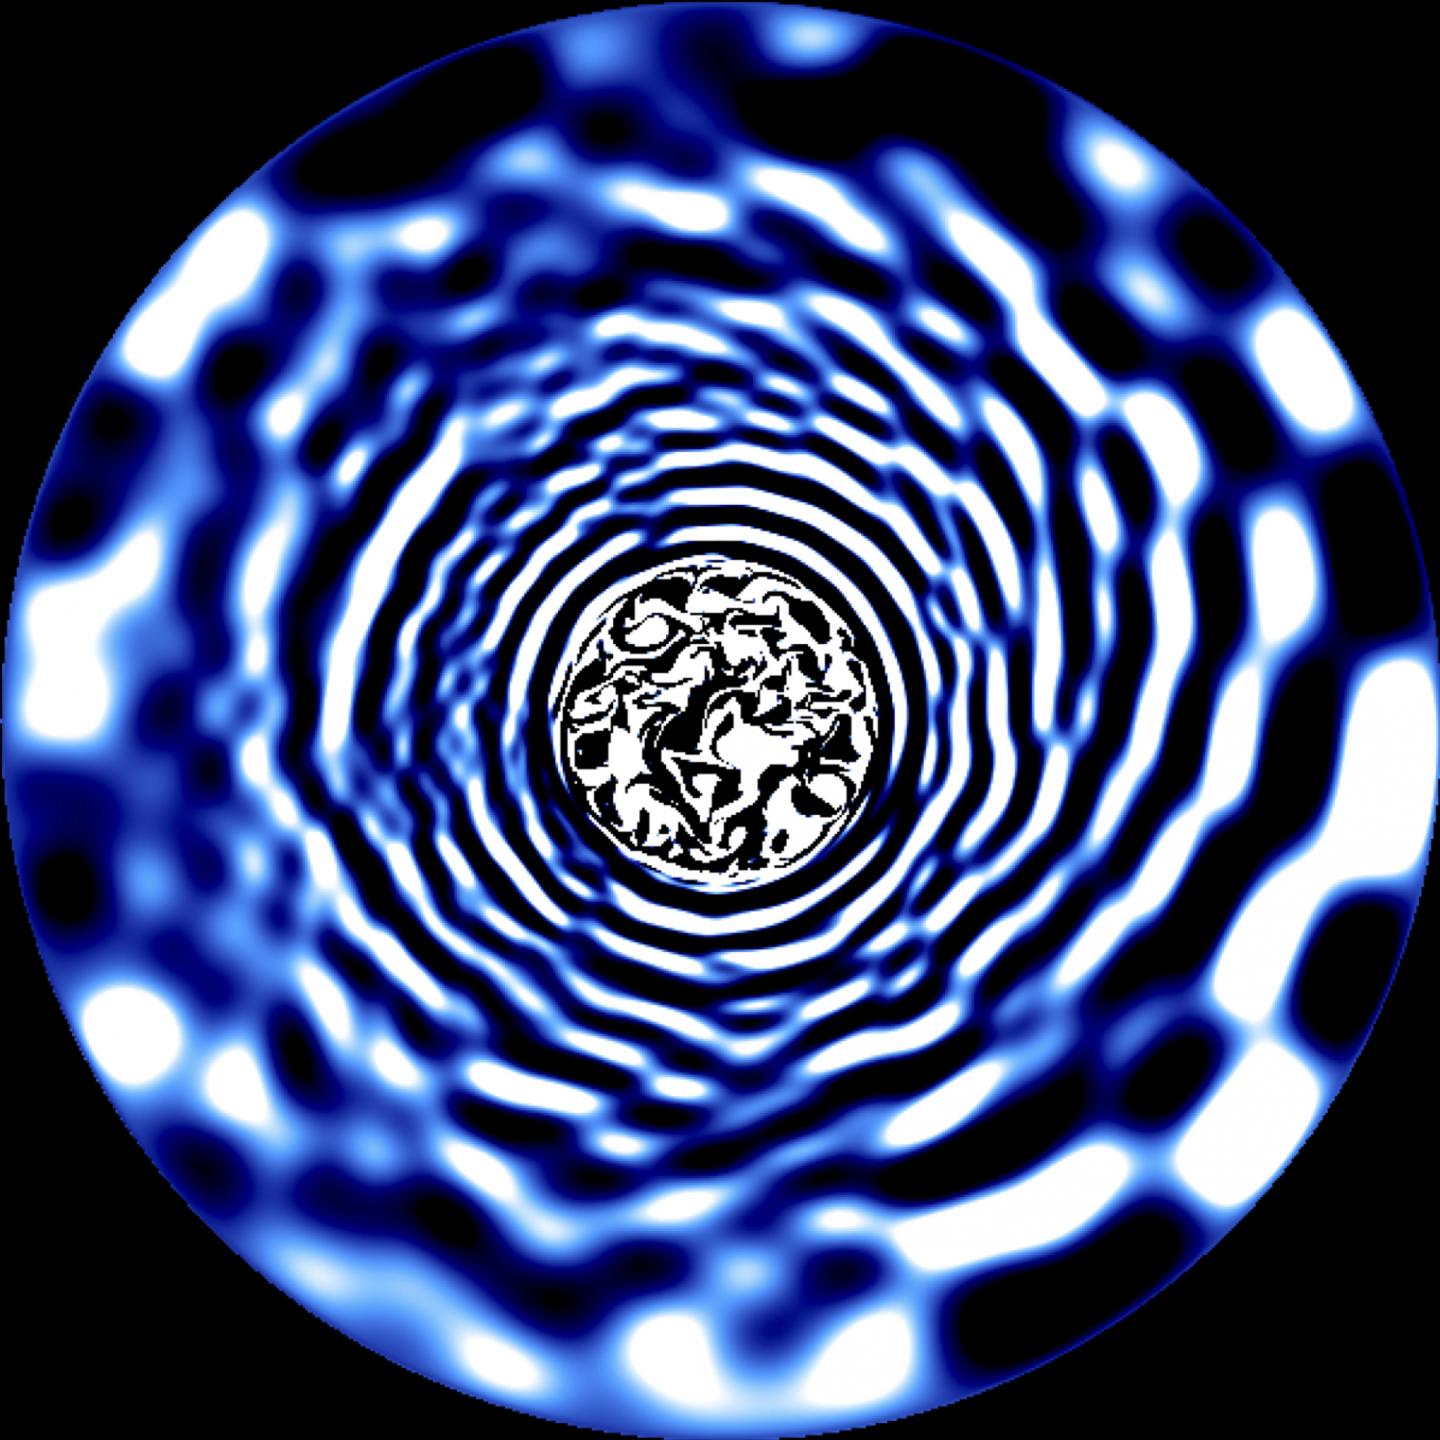 Fotograma de una simulación hidrodinámica del interior de una estrella que tiene una masa tres veces la de el Sol. Las zonas brillantes y oscuras representan fluctuaciones de temperatura que se propagan desde el interior de la estrella hasta su superficie debido la existencia de ondas producidas en un núcleo convectivo turbulento. Crédito: Tamara Rogers.